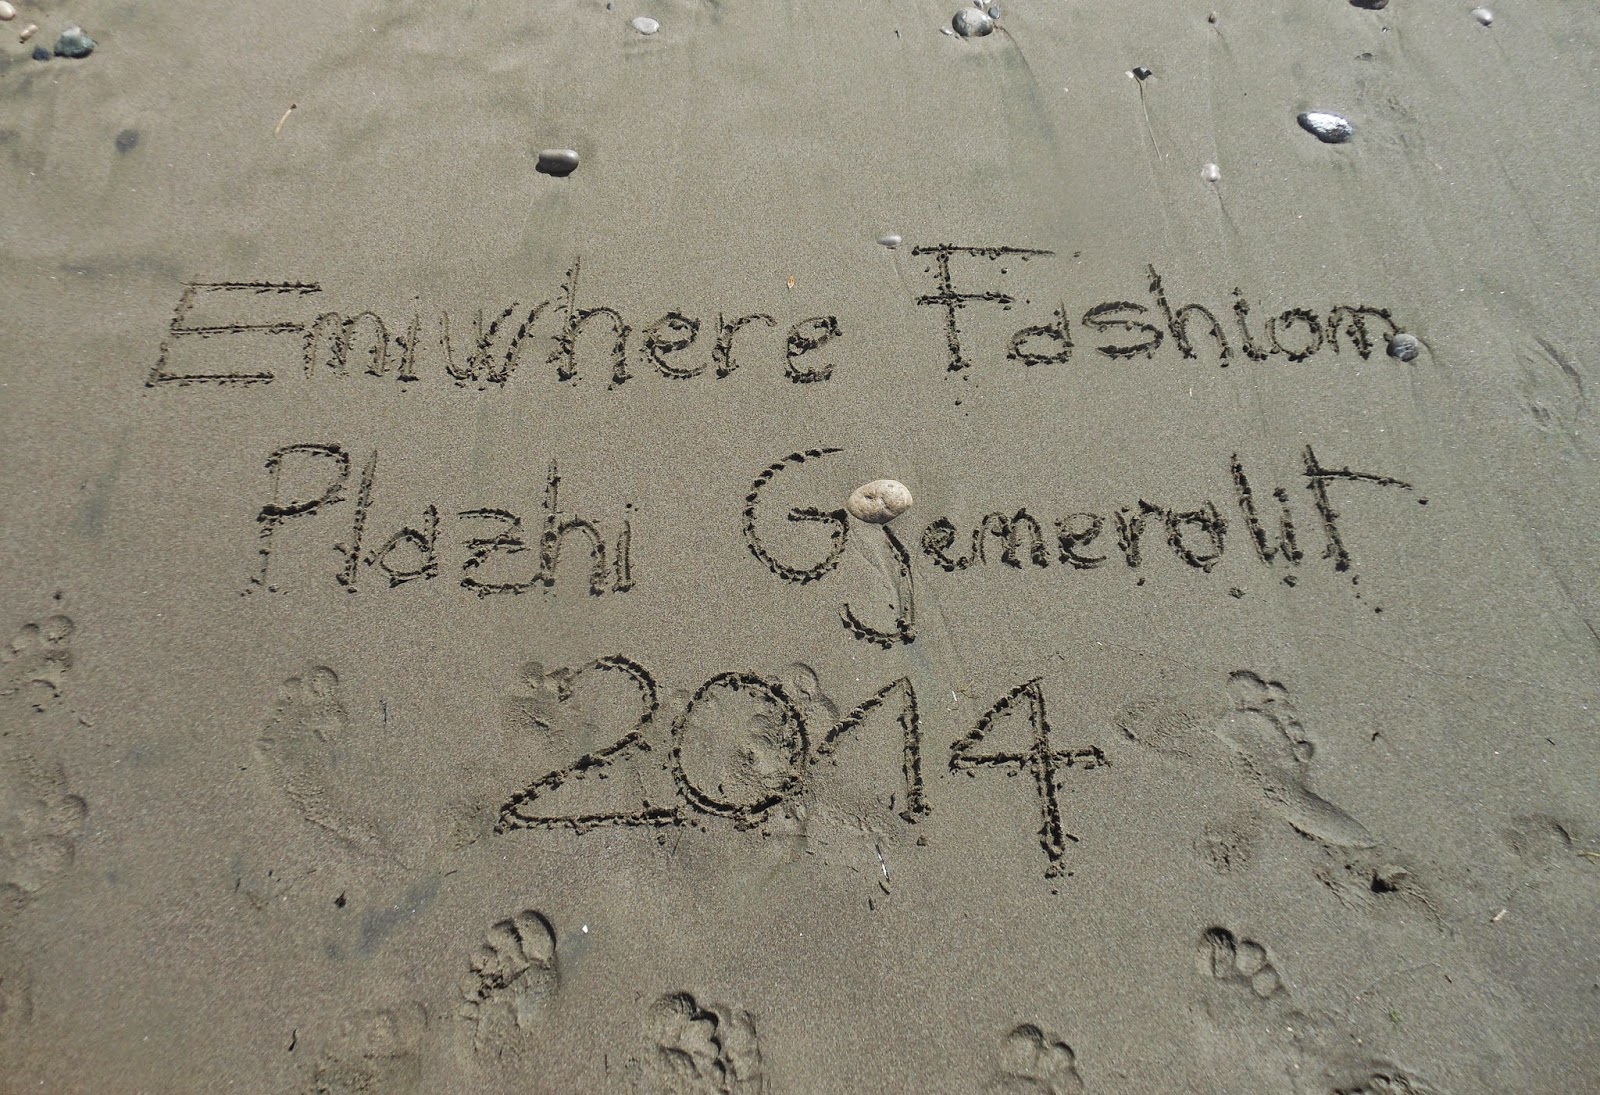 Eniwhere Fashion - Albania 2014